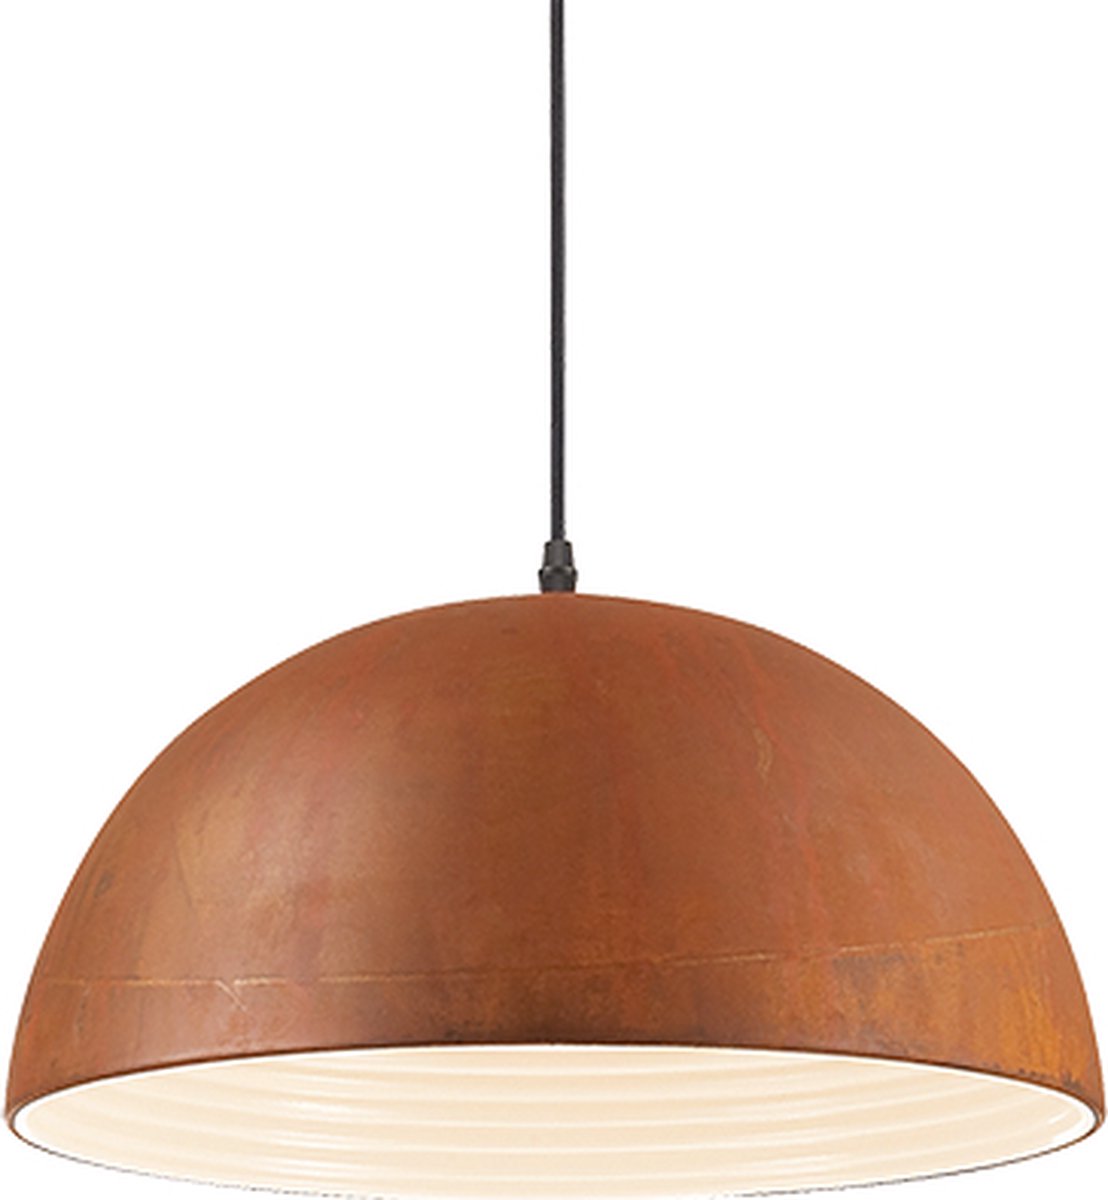 Ideal Lux - Folk - Hanglamp - Metaal - E27 - Bruin - Voor binnen - Lampen - Woonkamer - Eetkamer - Keuken